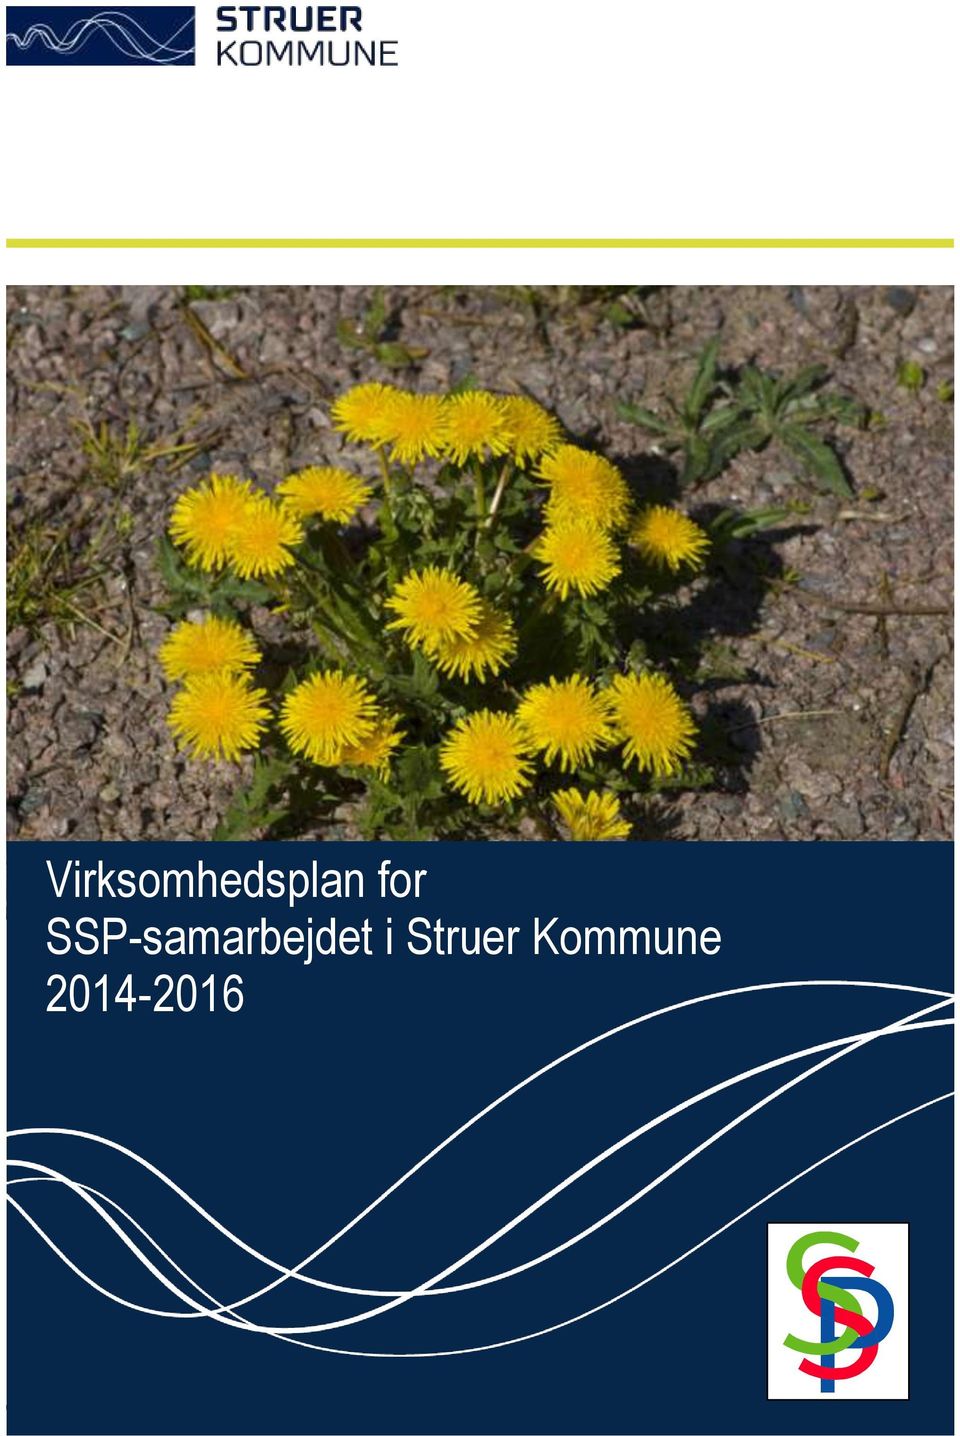 Kommune 2014-2016 TÆT PÅ